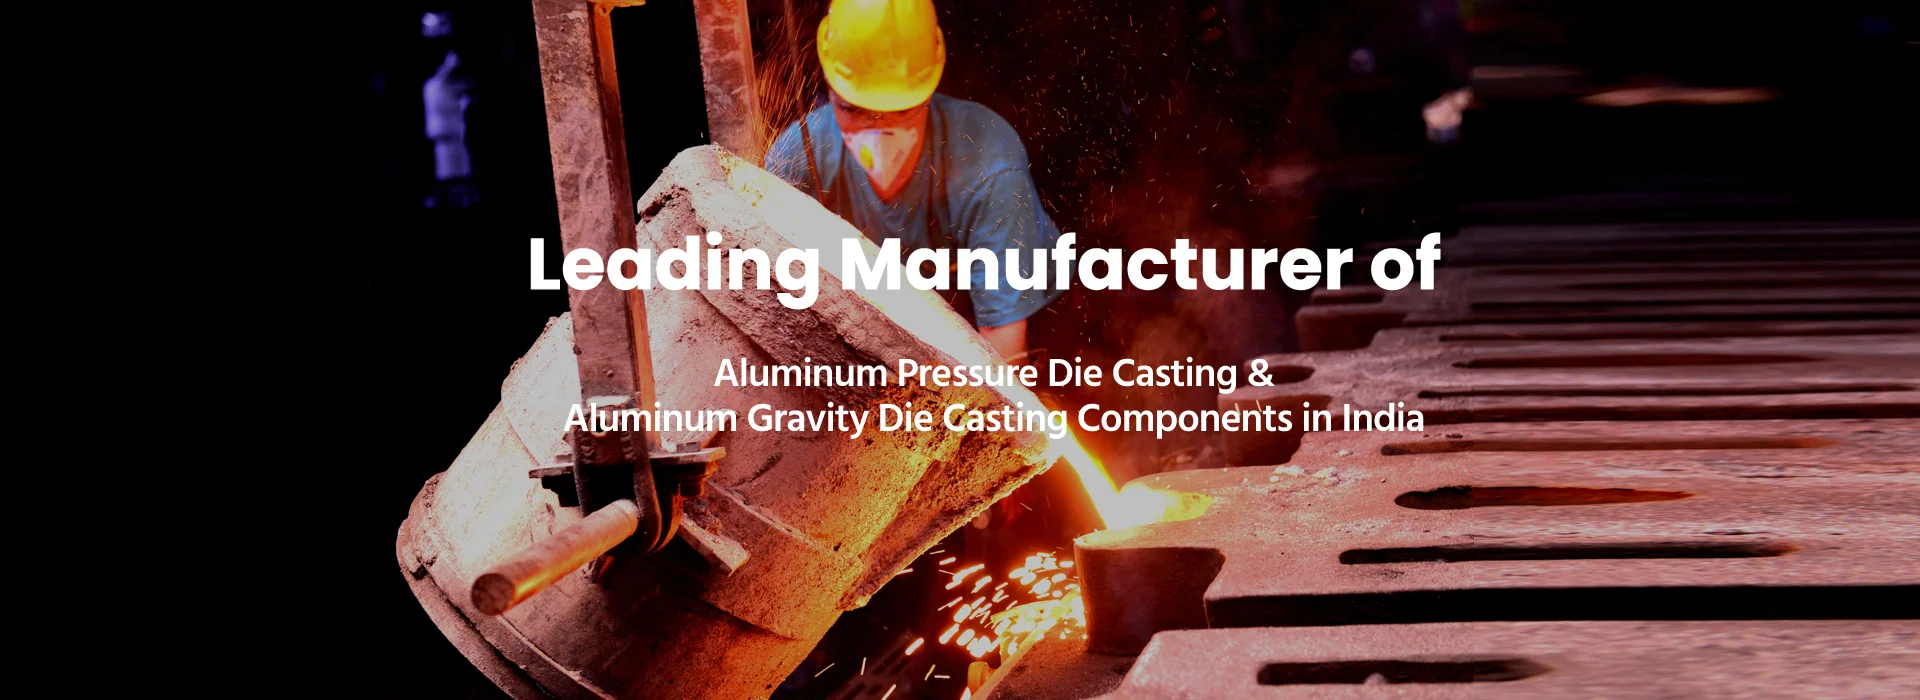 Aluminum Pressure Die Casting - PDC Parts